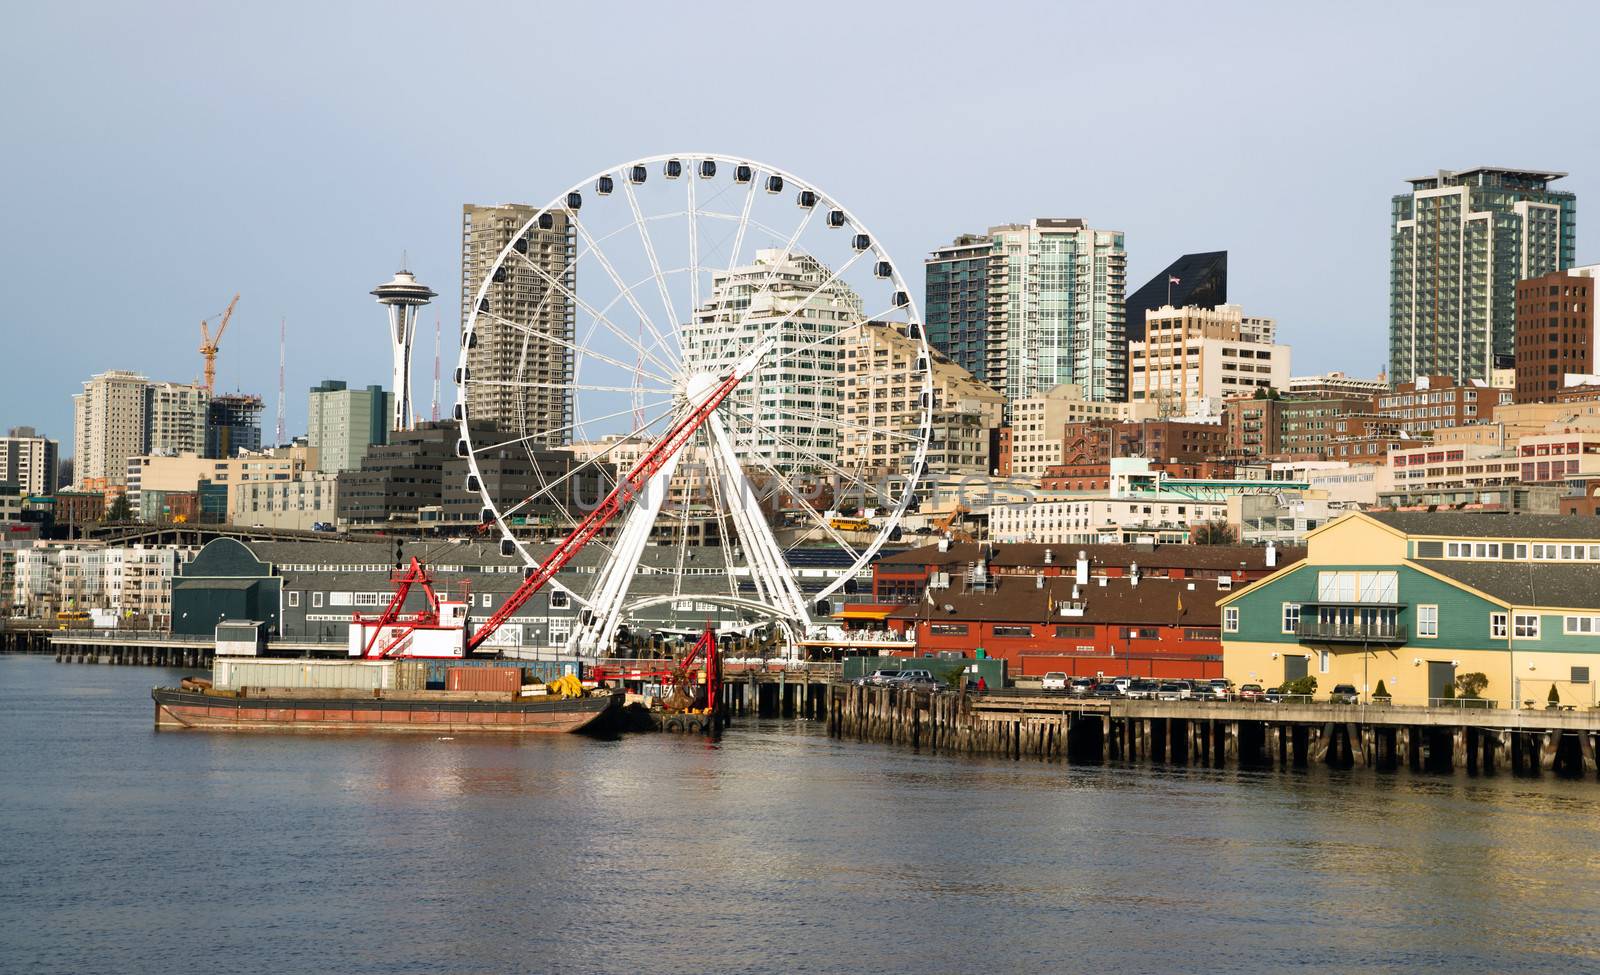 Waterfront Piers Dock Buildings Needle Ferris Wheel Seattle by ChrisBoswell